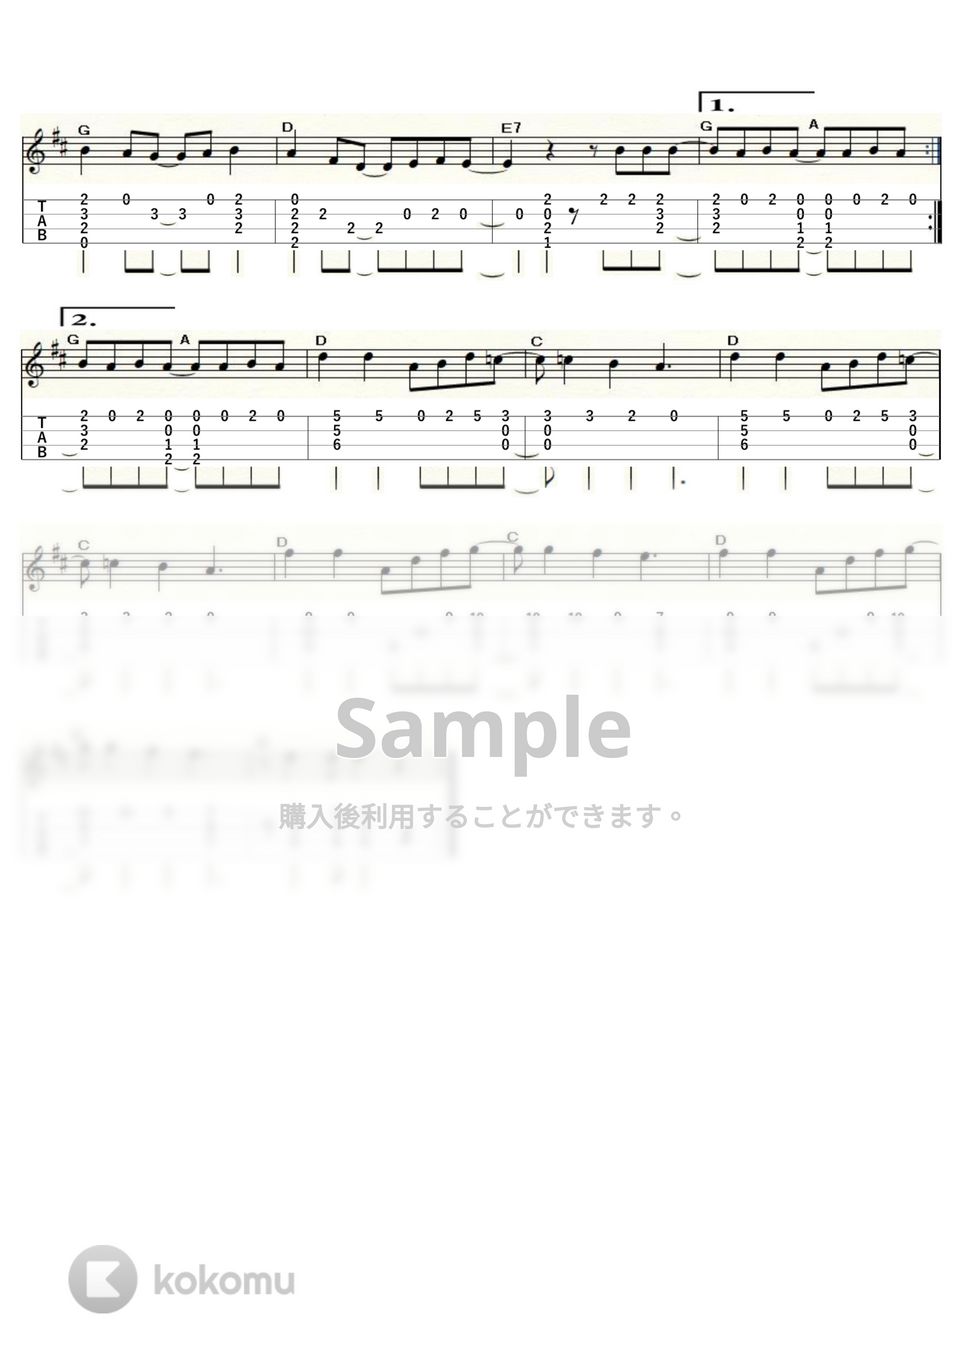 ミッシェル・ポルナレフ - シェリーに口づけ (ｳｸﾚﾚｿﾛ / High-G・Low-G / 中級) by ukulelepapa